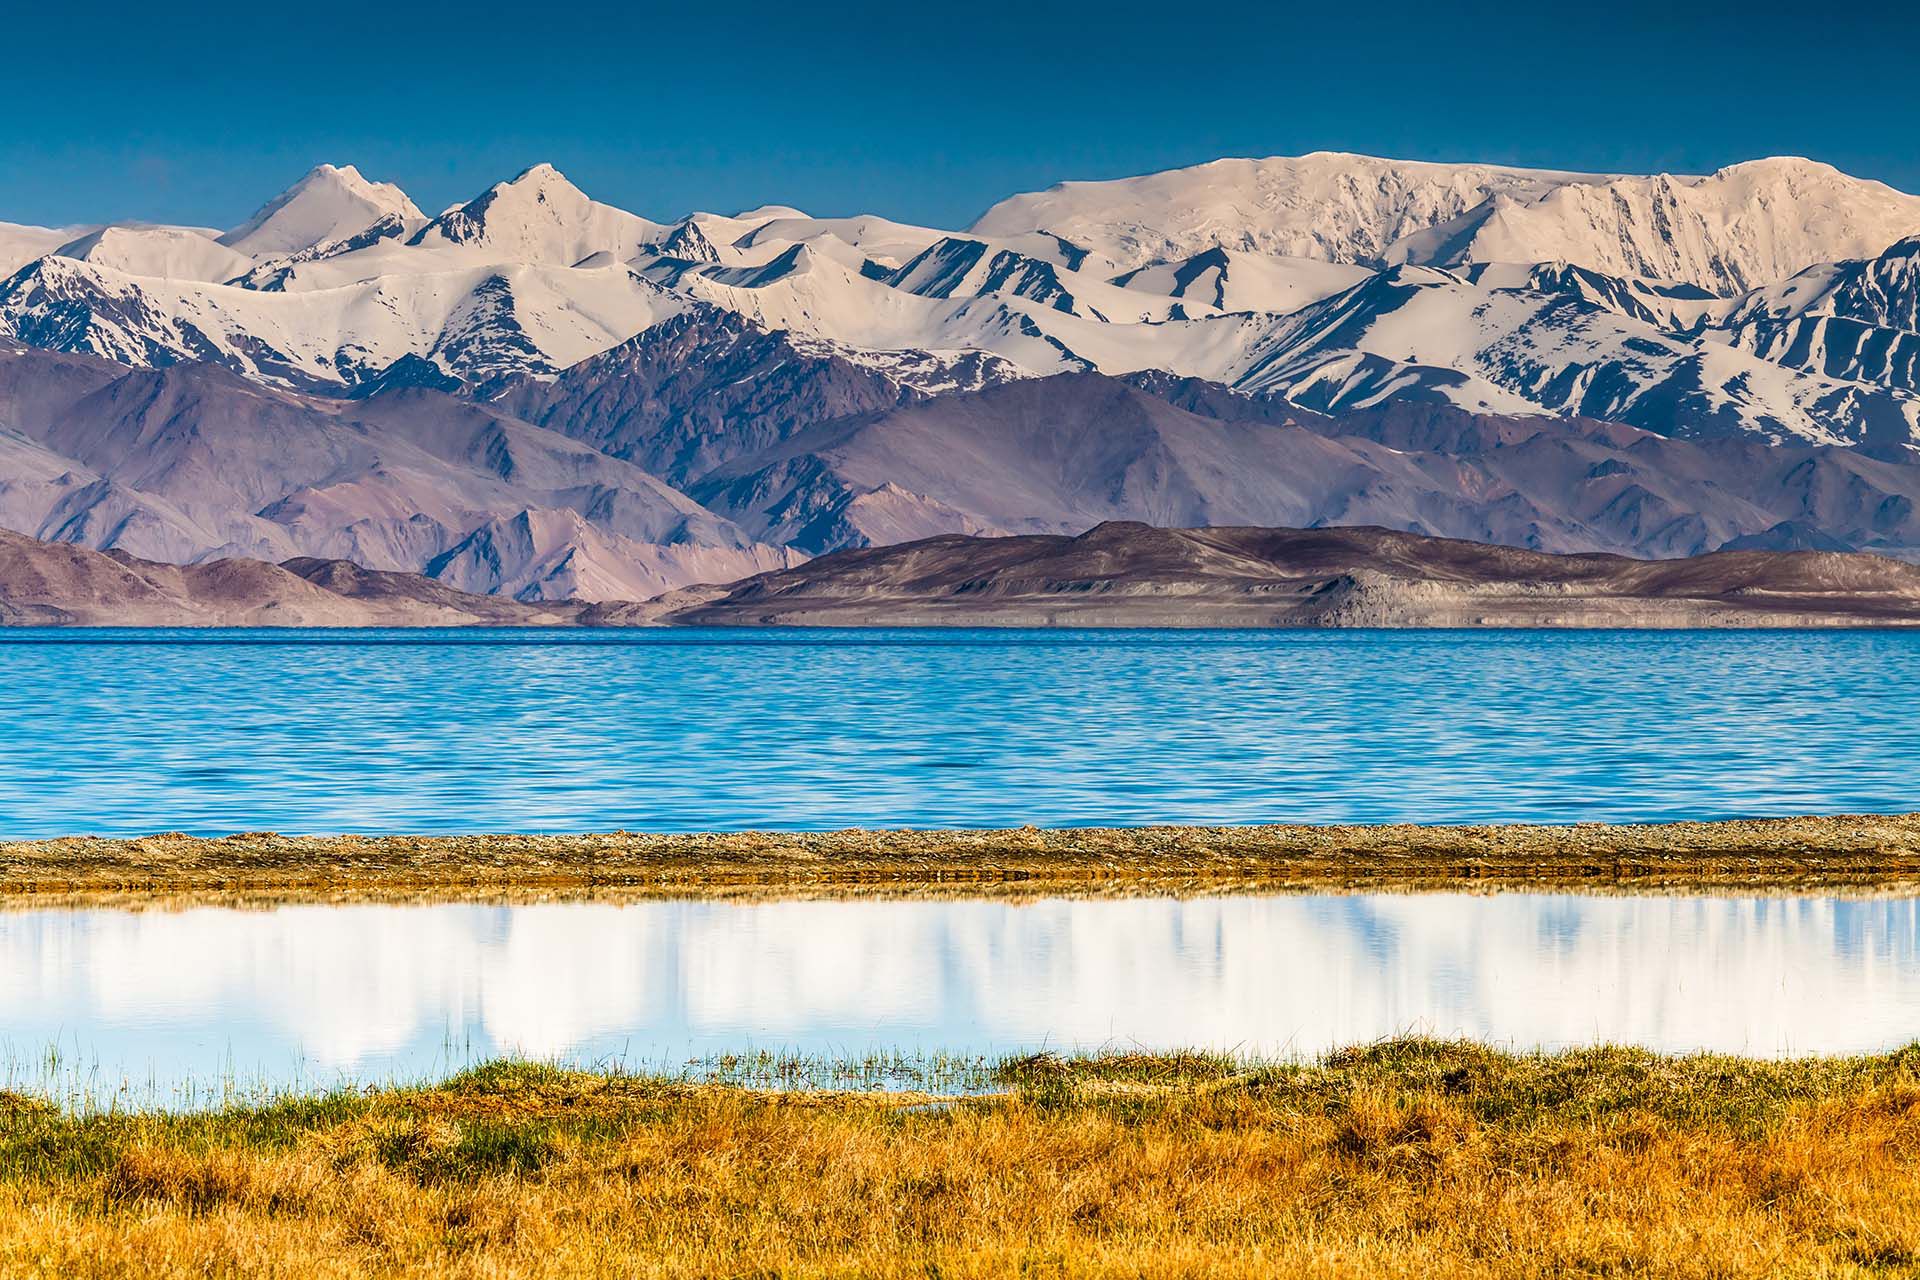 Aislado durante siglos y apenas visitado por turistas, Tayikistán conserva uno de los paisajes más montañosos y sorprendentes del mundo